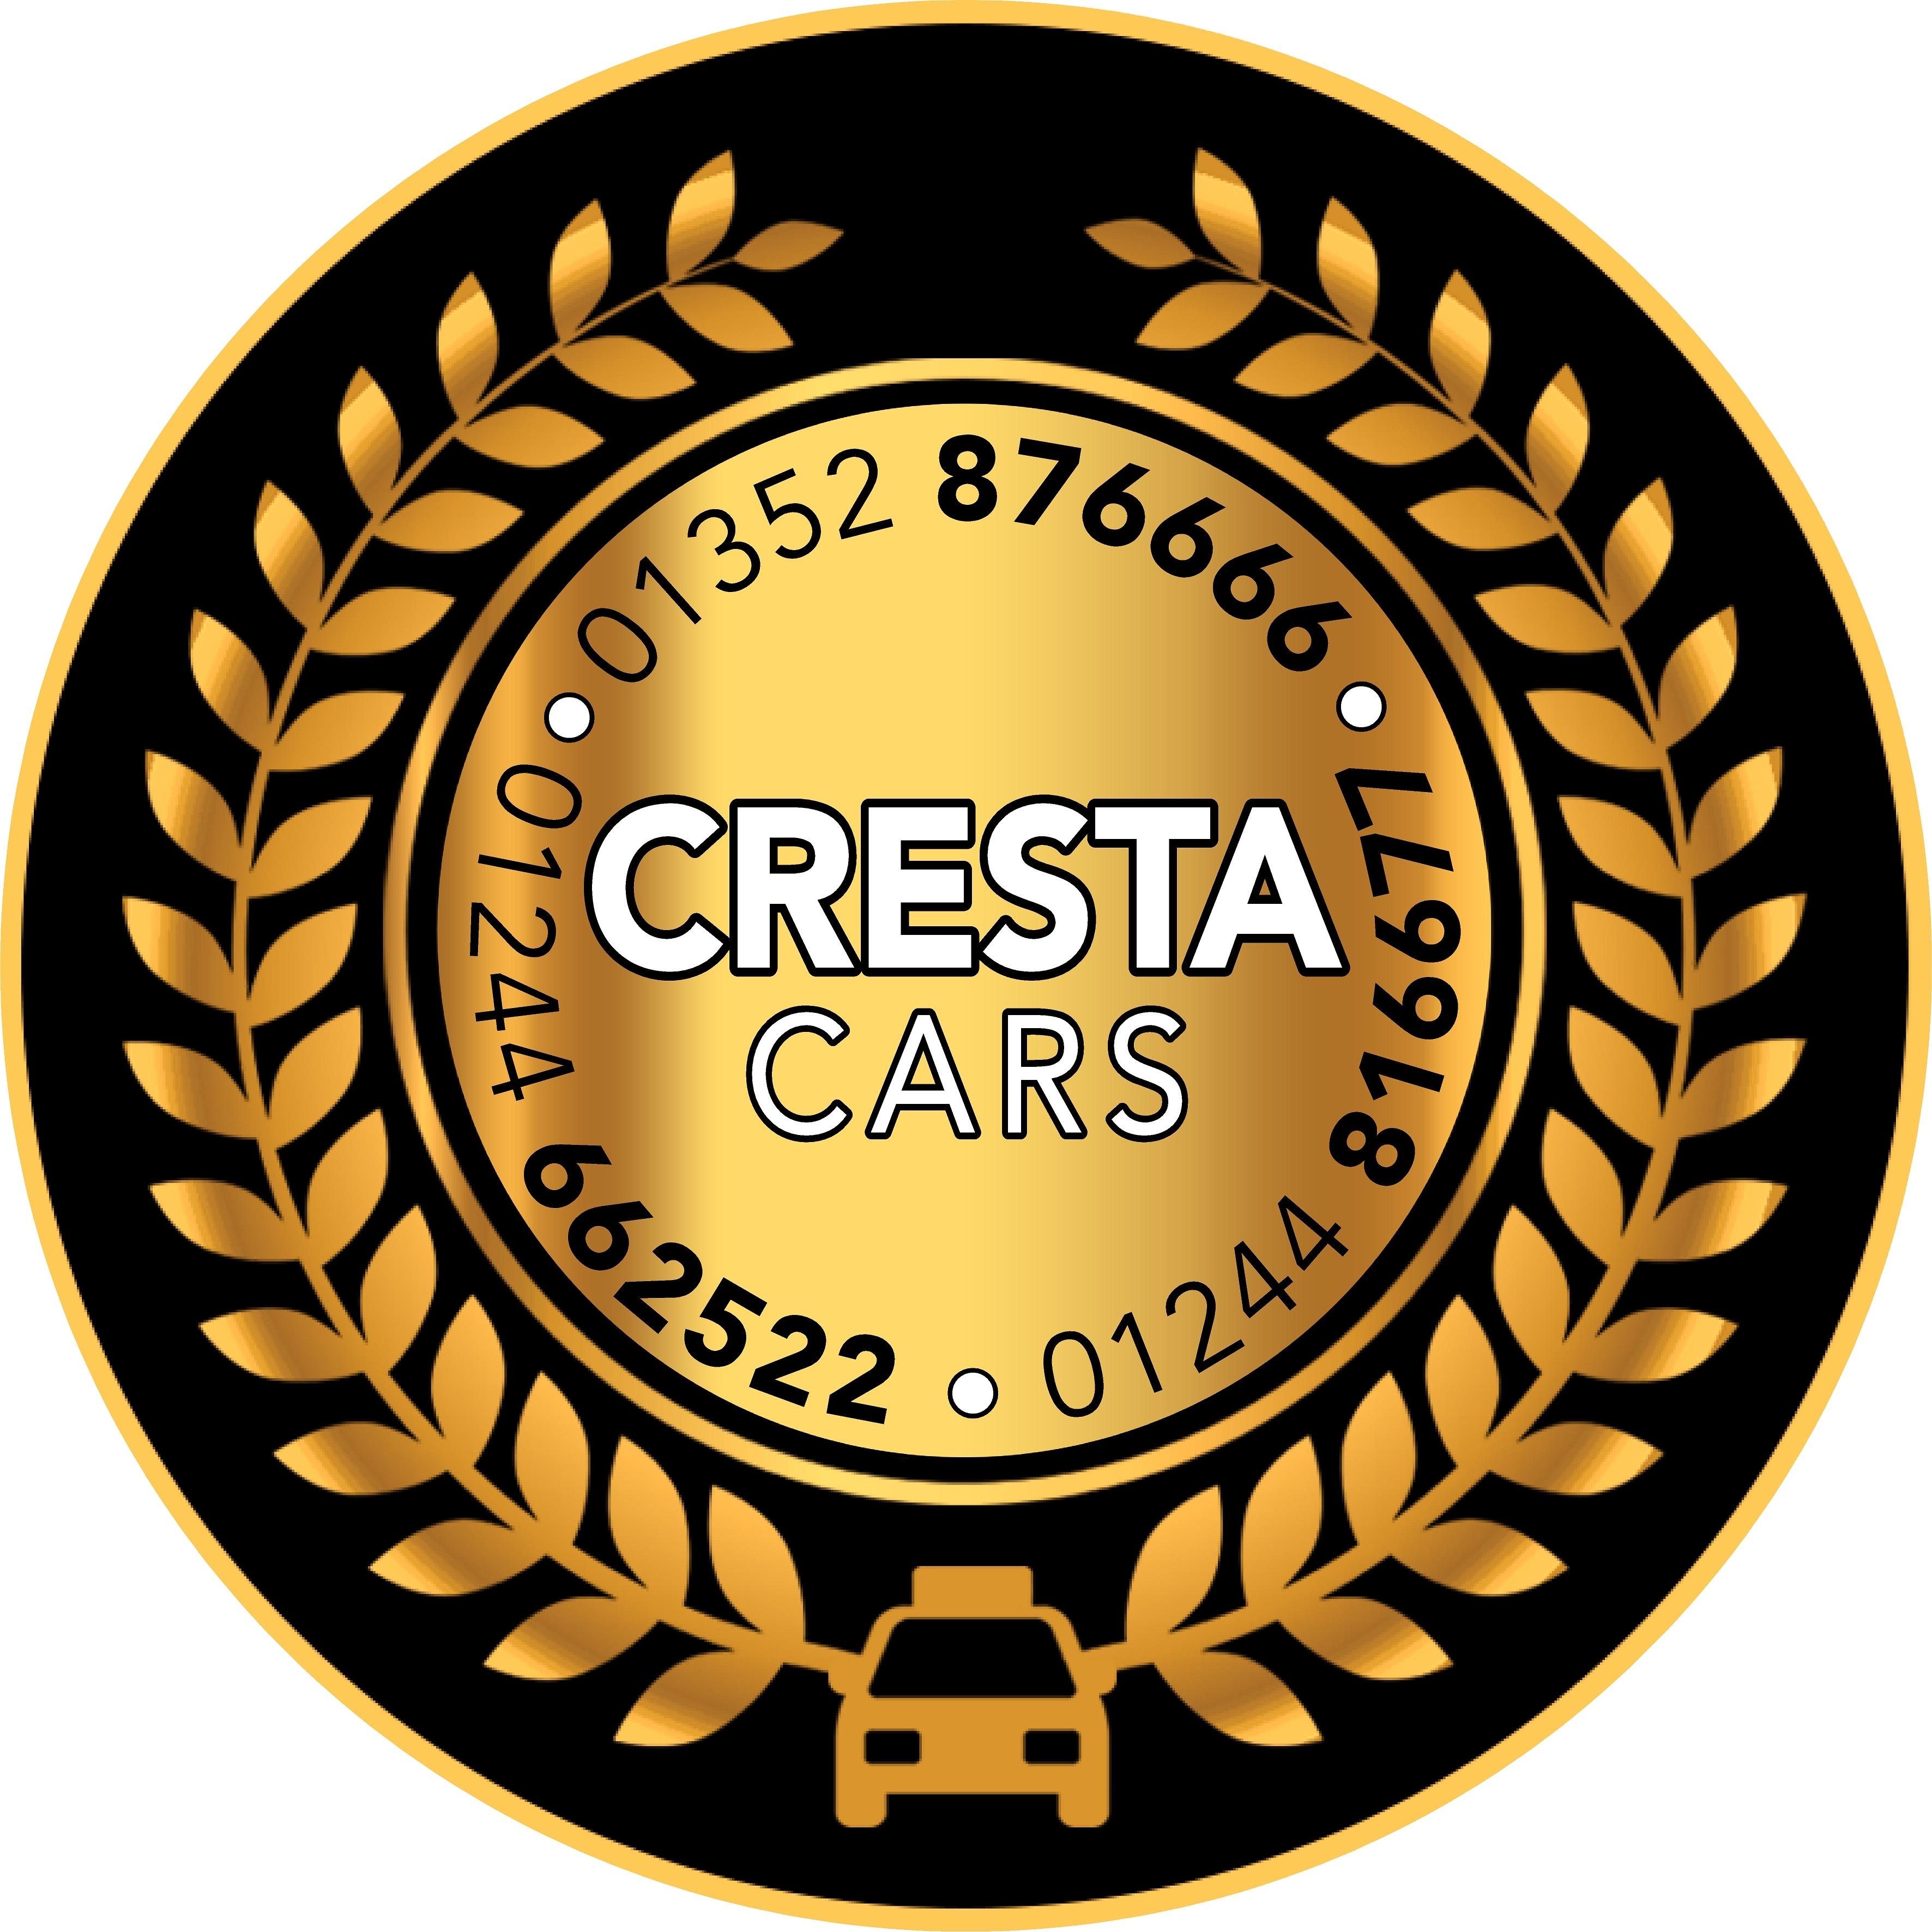 Cresta Taxis Mold Mold 01352 876666